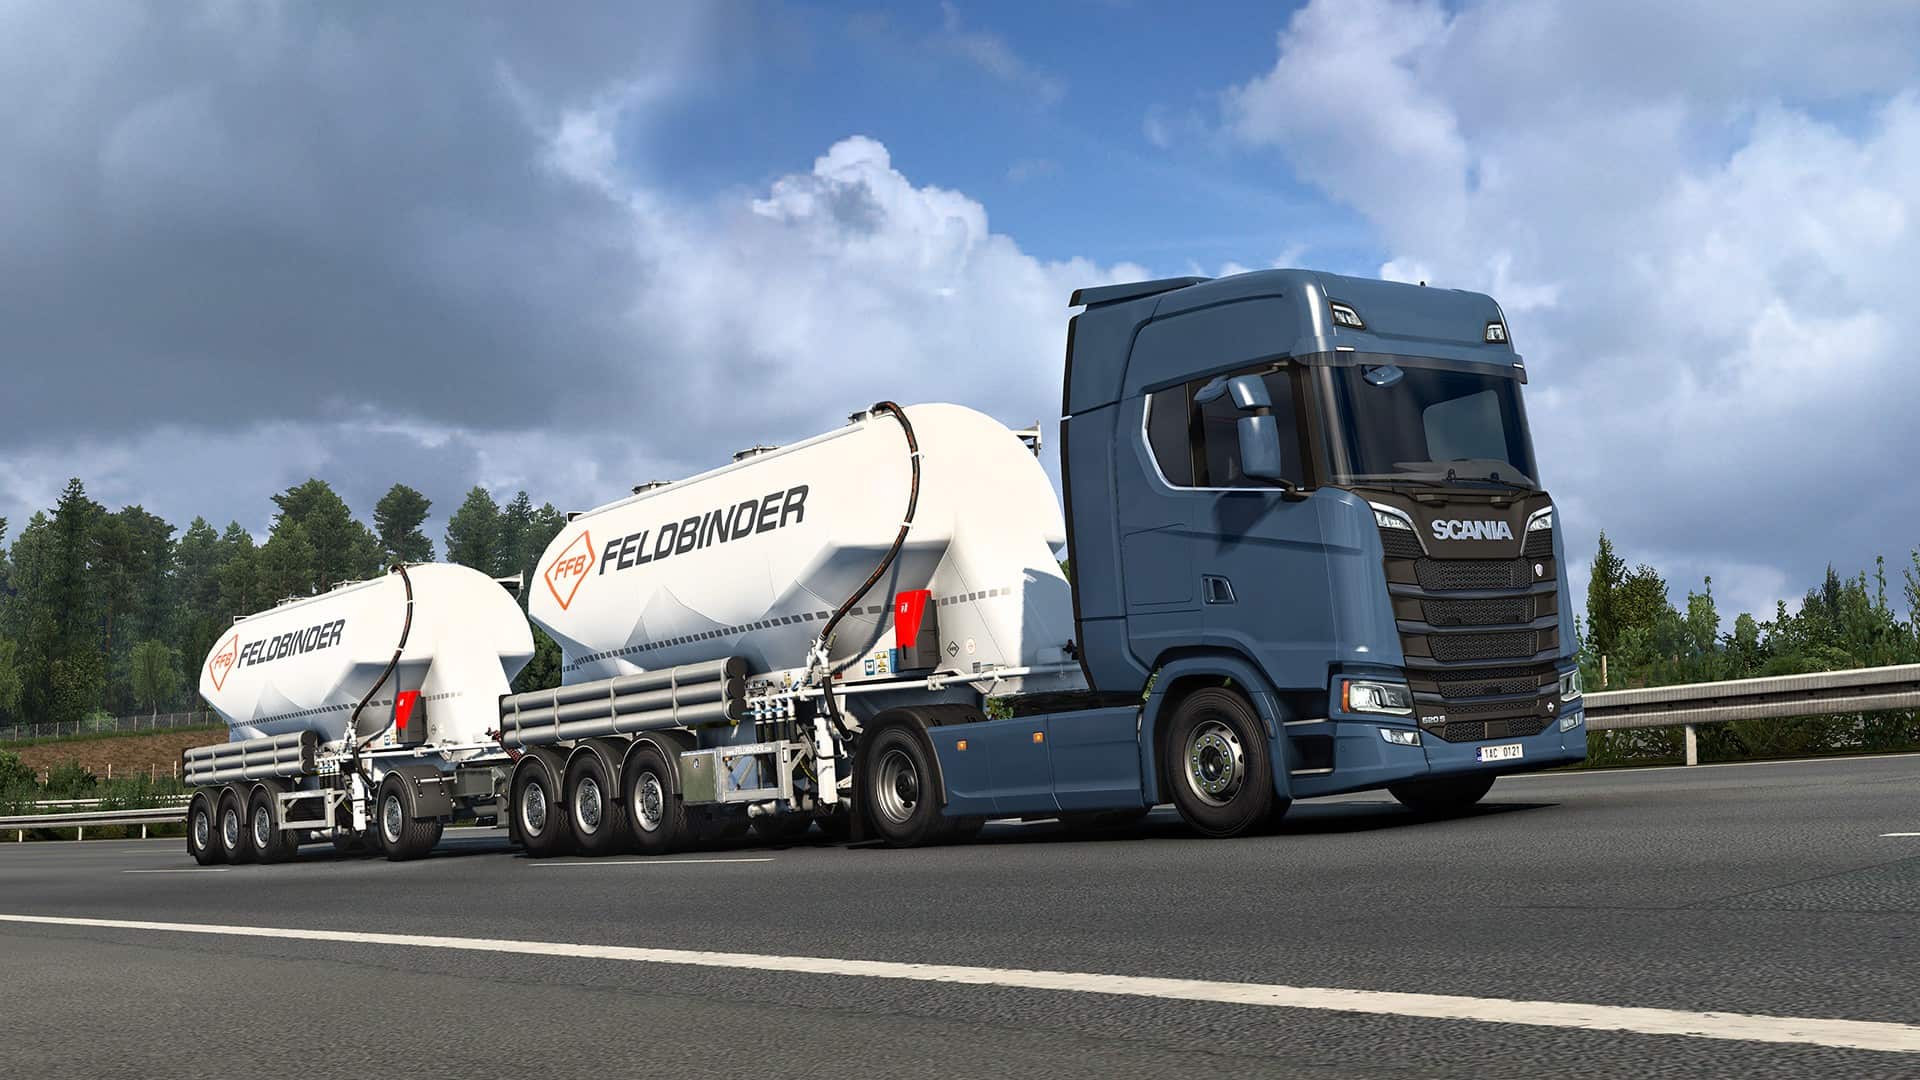 آموزش آنلاین بازی کردن Euro Truck Simulator 2 در استیم